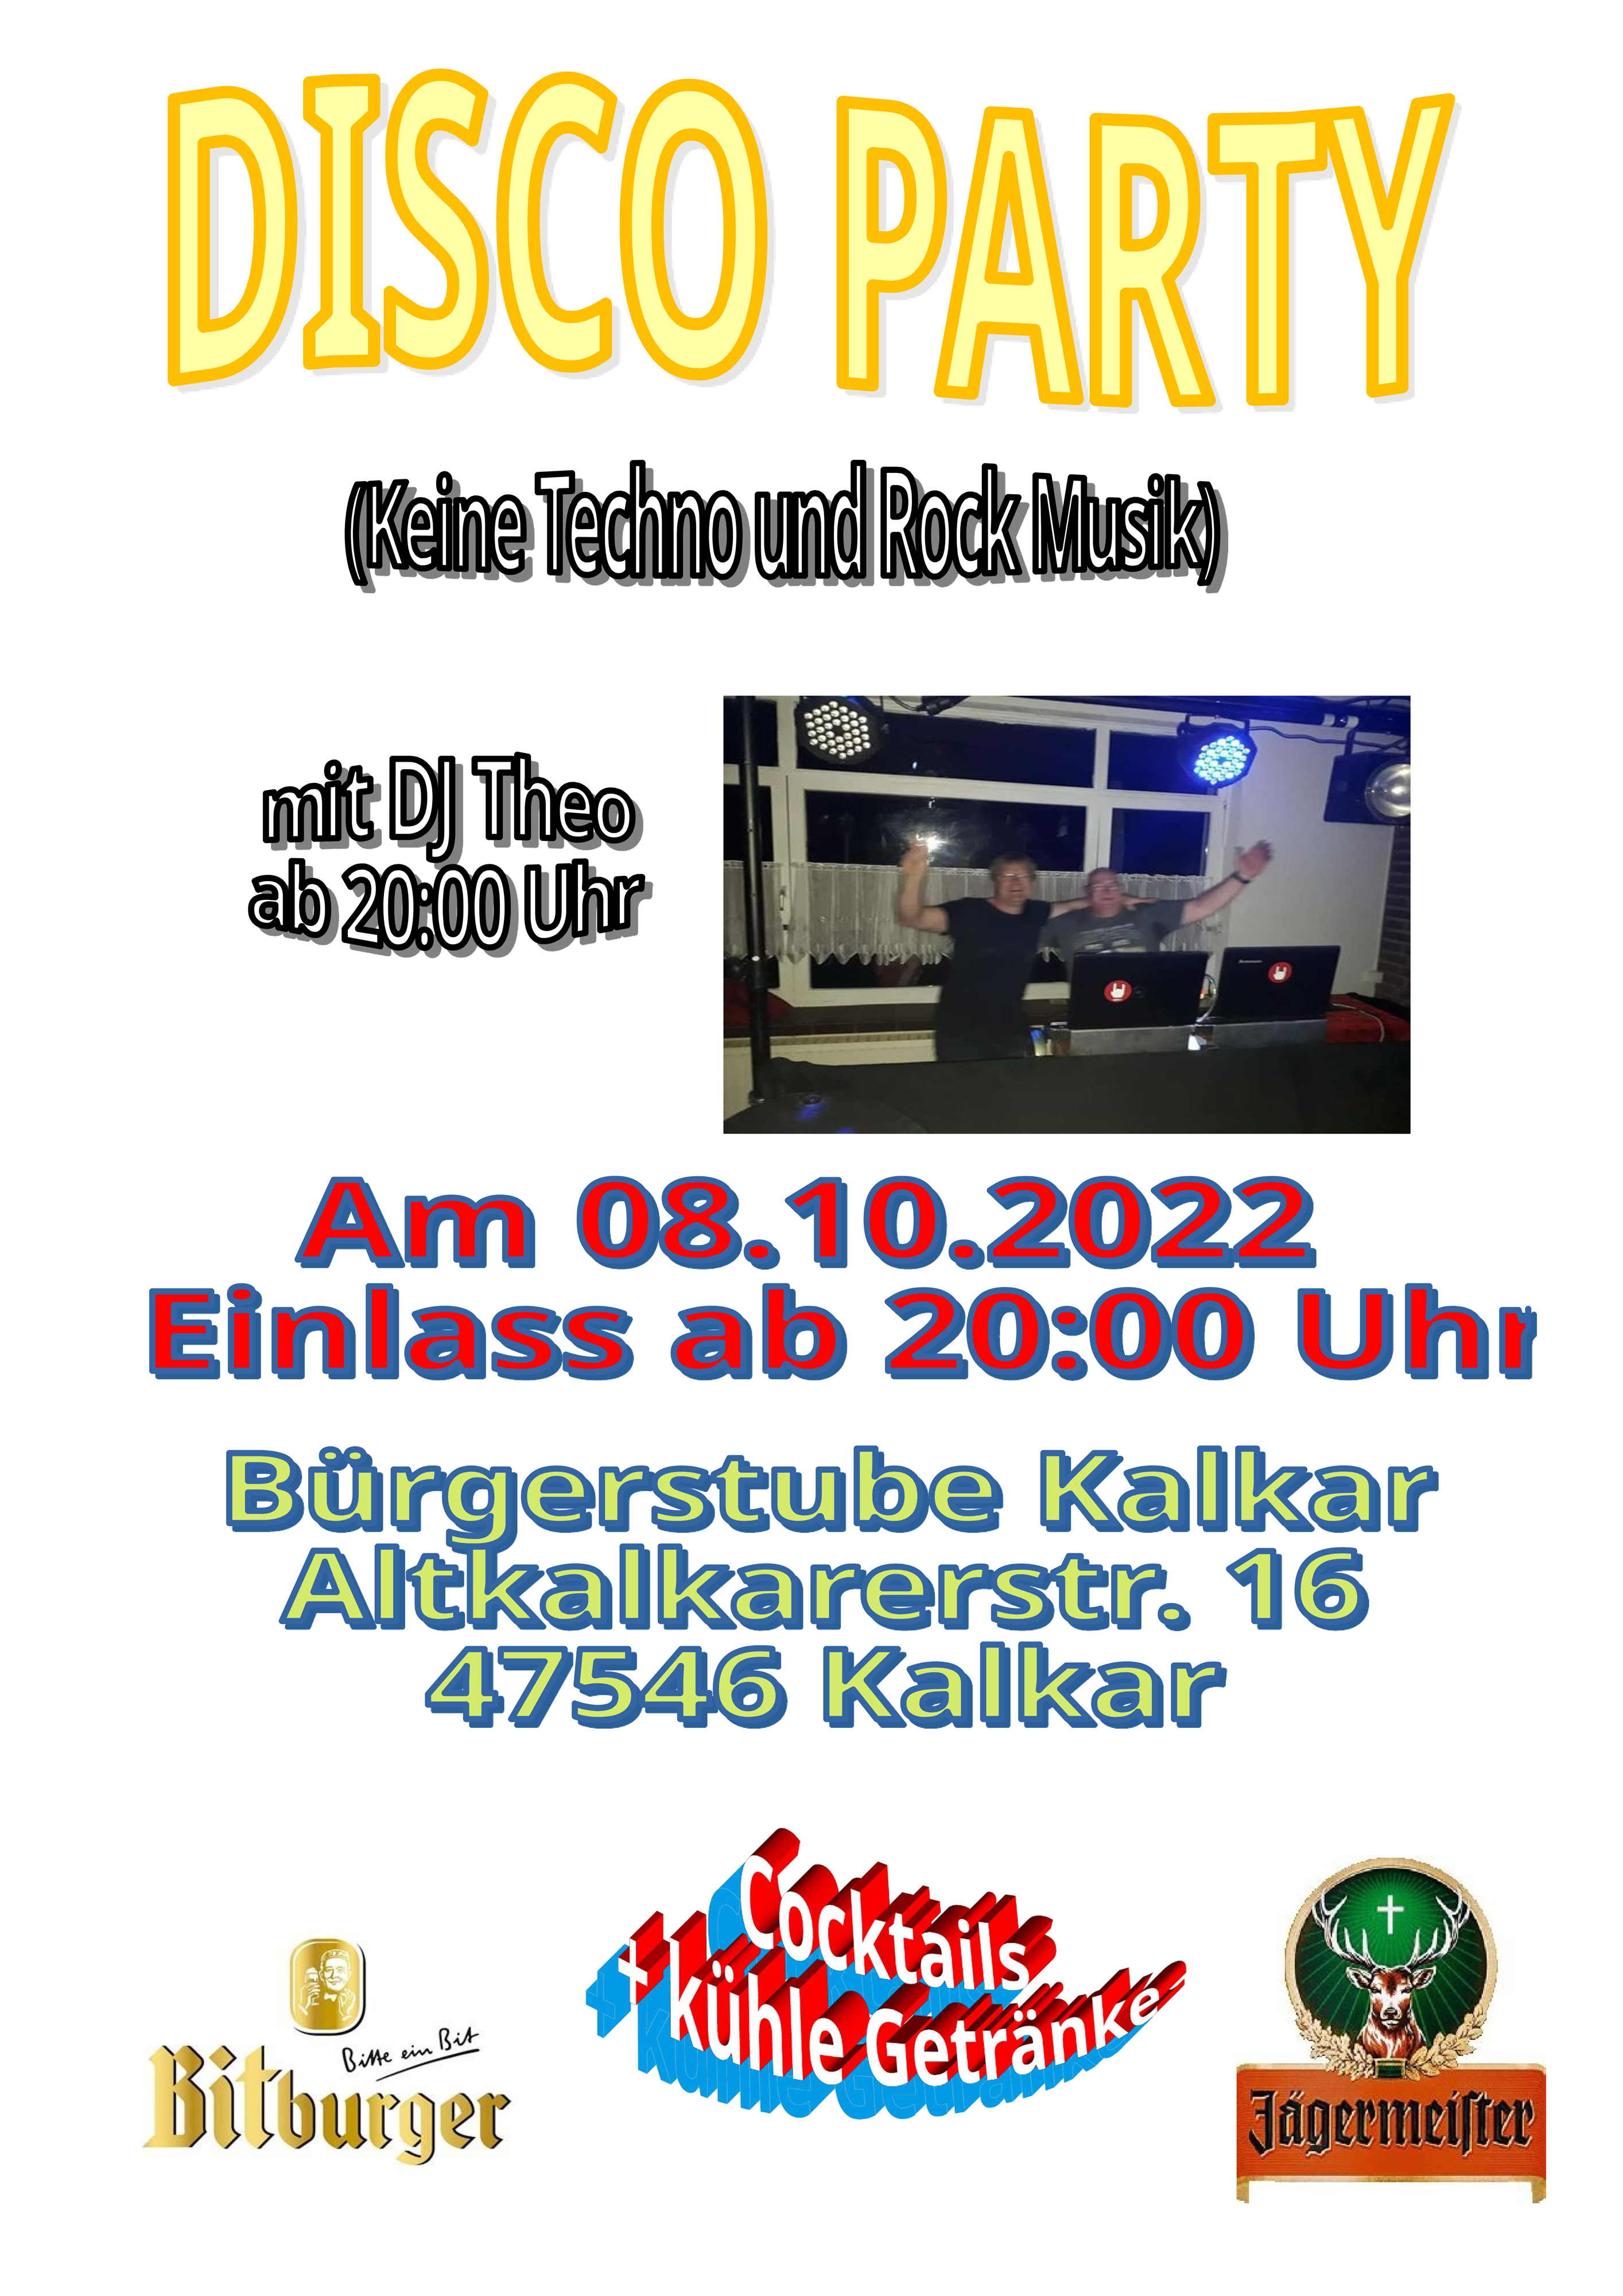 Disco Party Bürgerstube Kalkar 08.10.2022